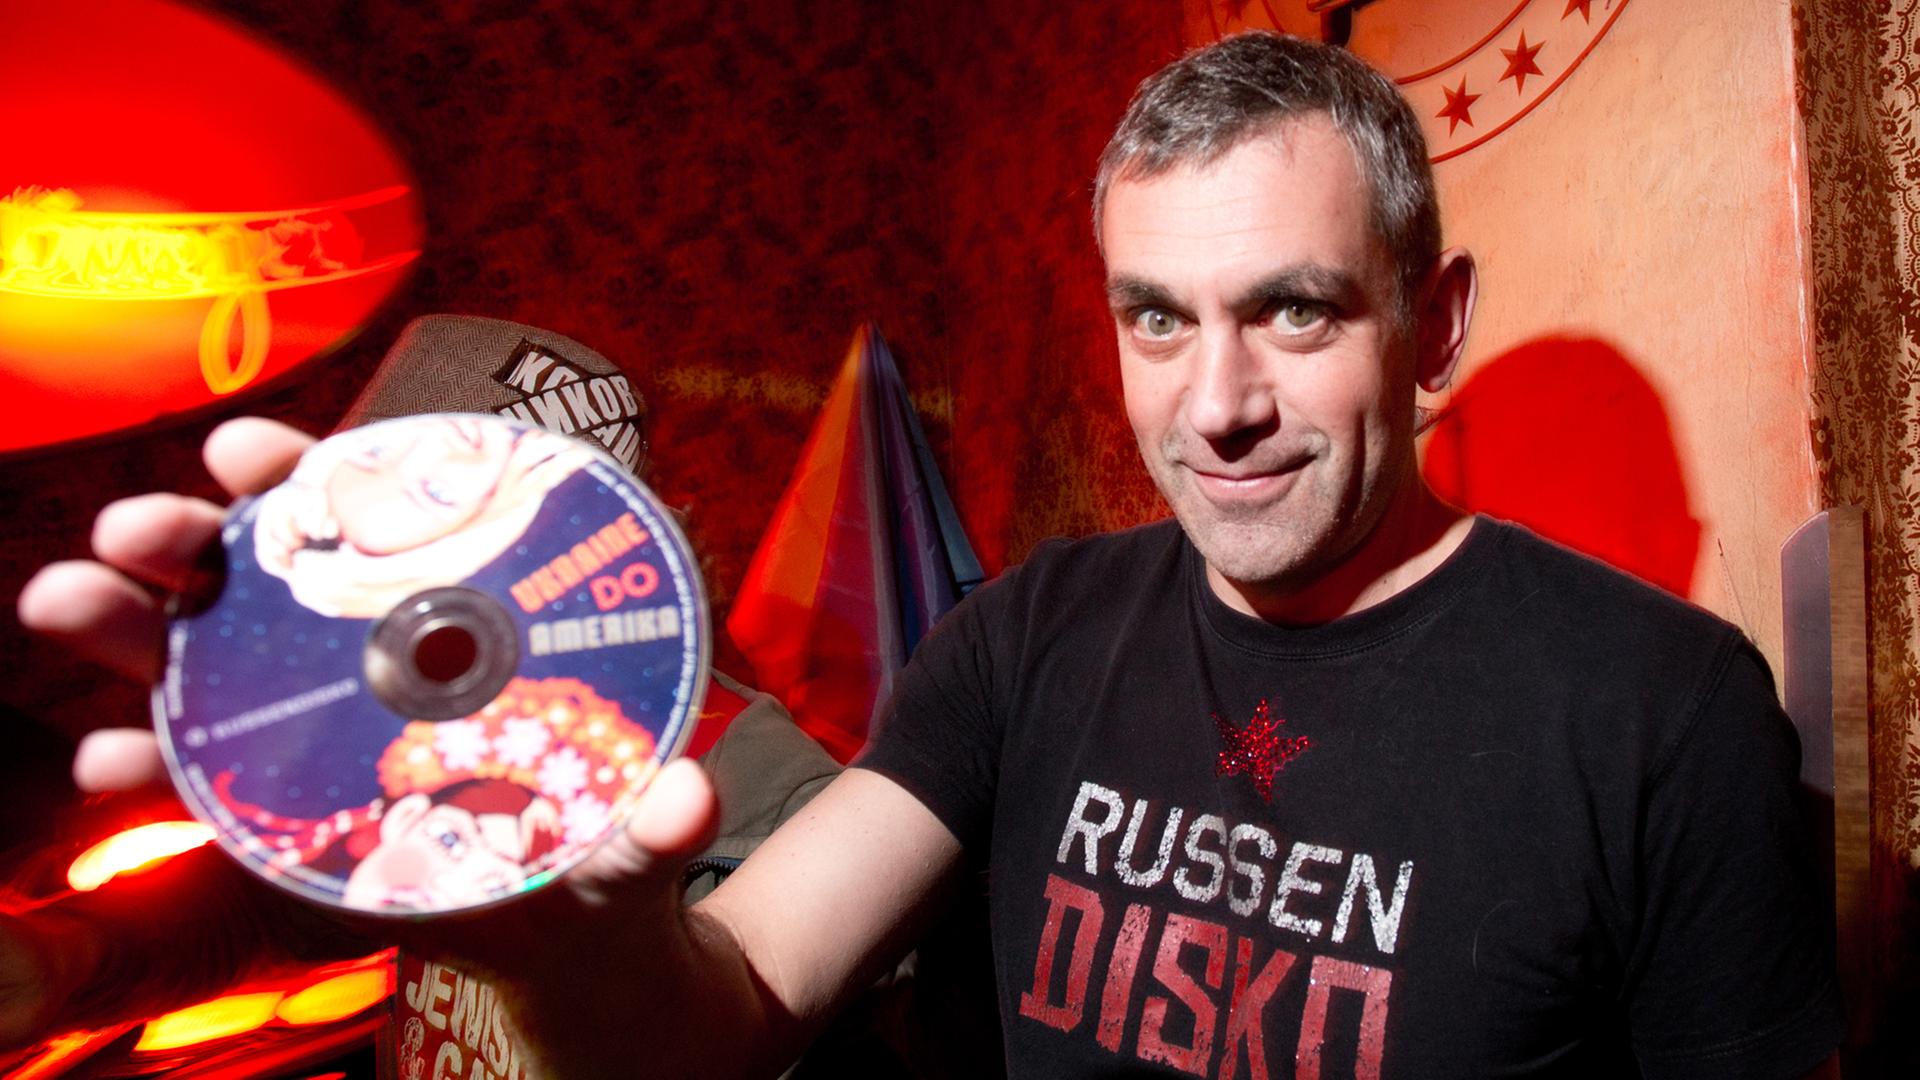 Der Autor Wladimir Kaminer legt im Rahmen seiner Partyreihe "Russendisko" in einem Lokal in Berlin ukrainische Hits auf.